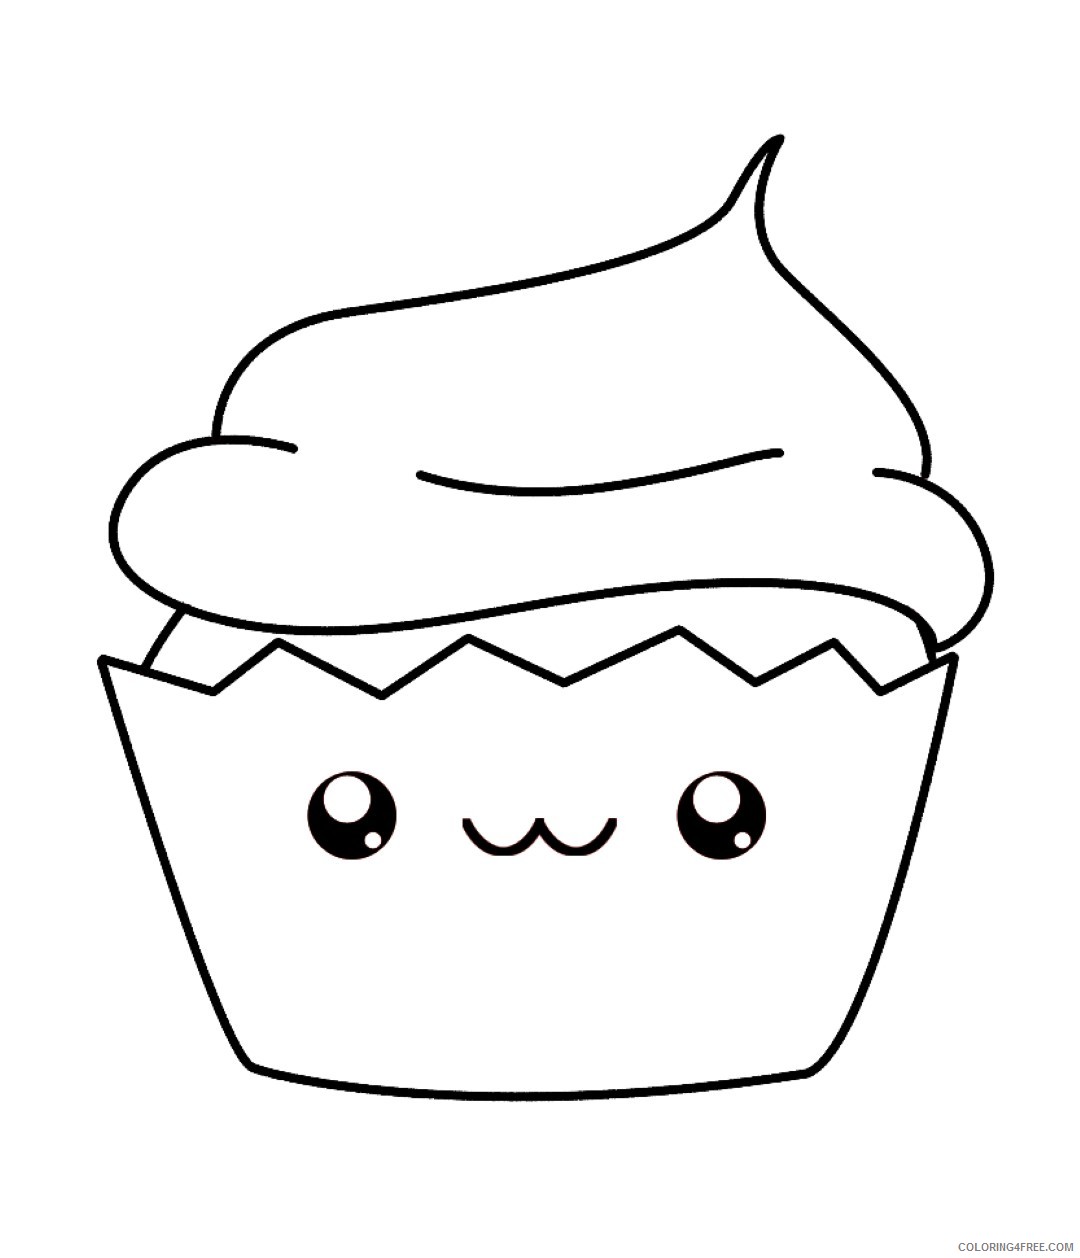 kawaii coloring pages cupcake Coloring4free